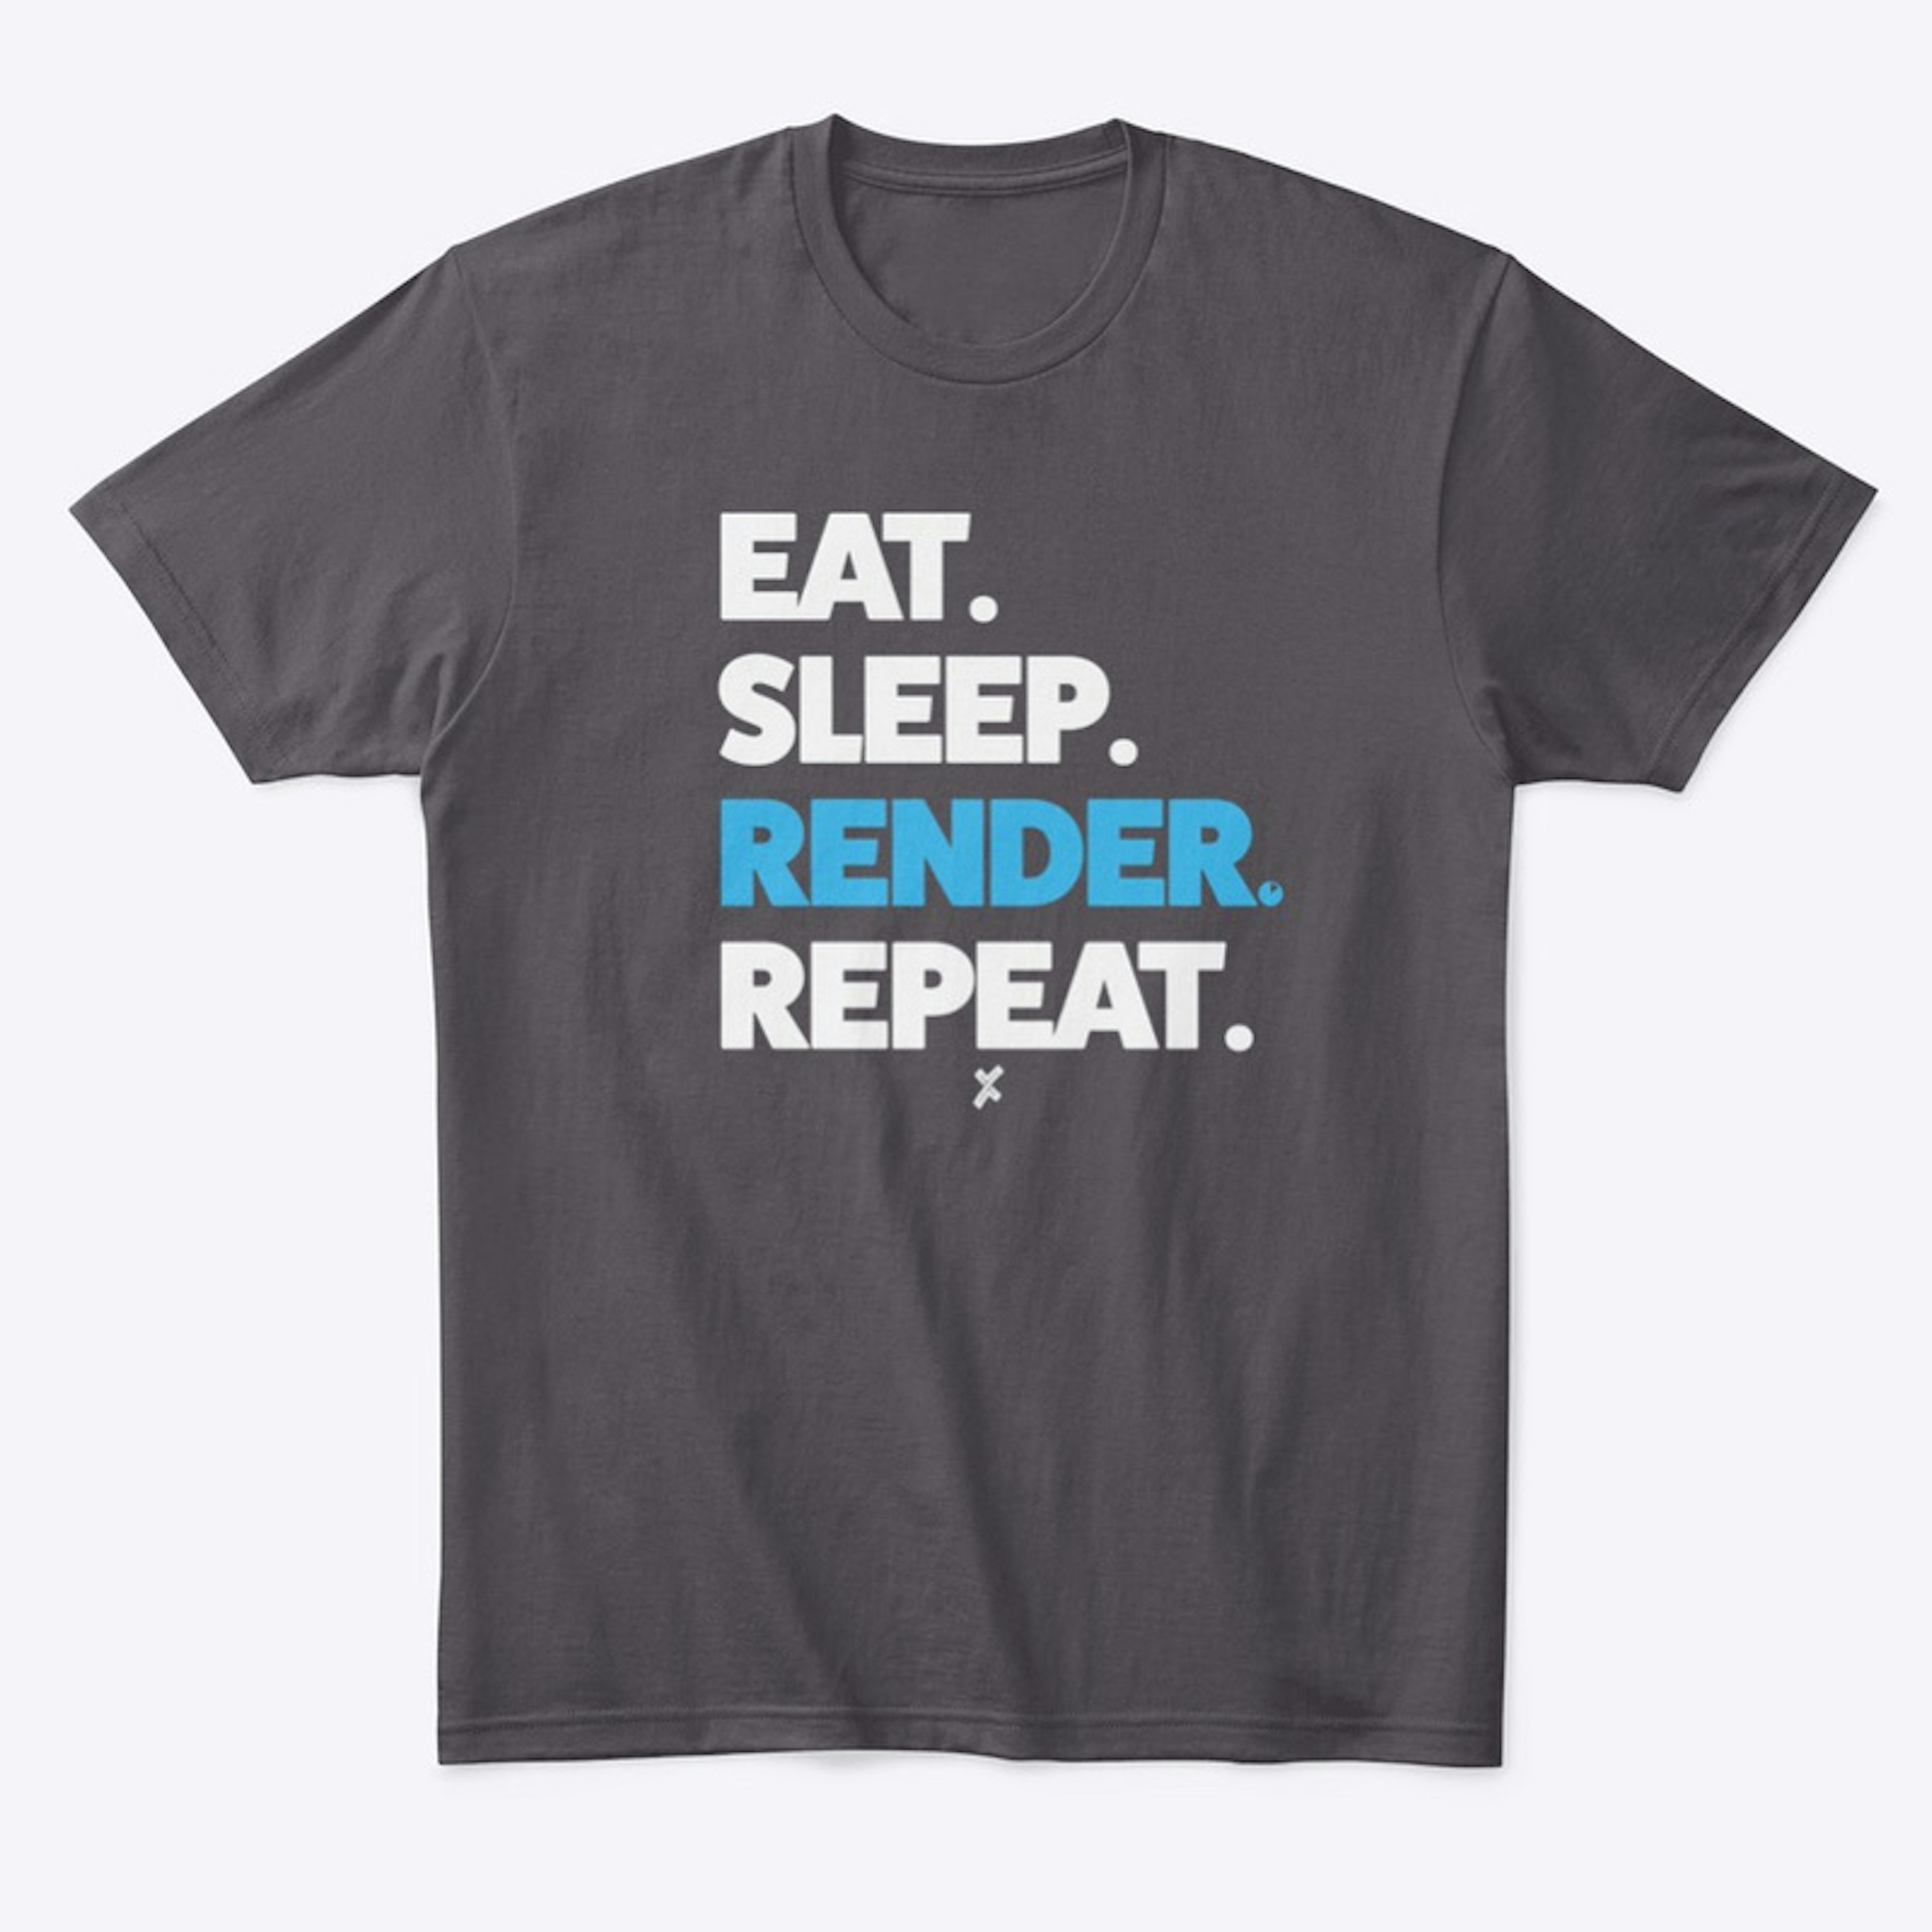 Eat. Sleep. Render. Repeat. Tee